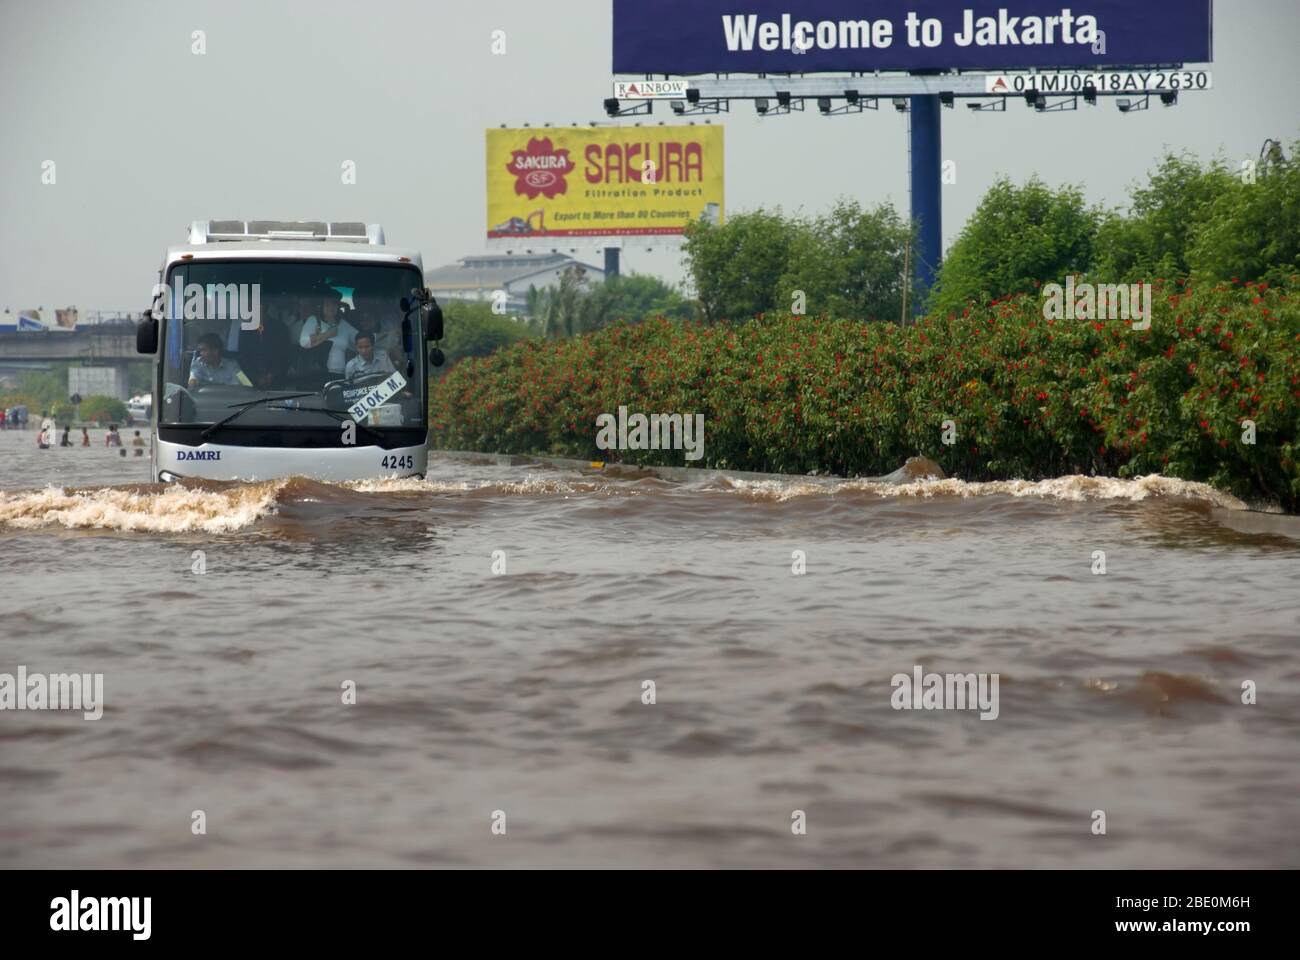 L'autobus navetta dell'Aeroporto di Jakarta passa attraverso la strada a pedaggio alluvionata nel 2008. Immagine di archivio. Foto: Reynold Sumayku Foto Stock